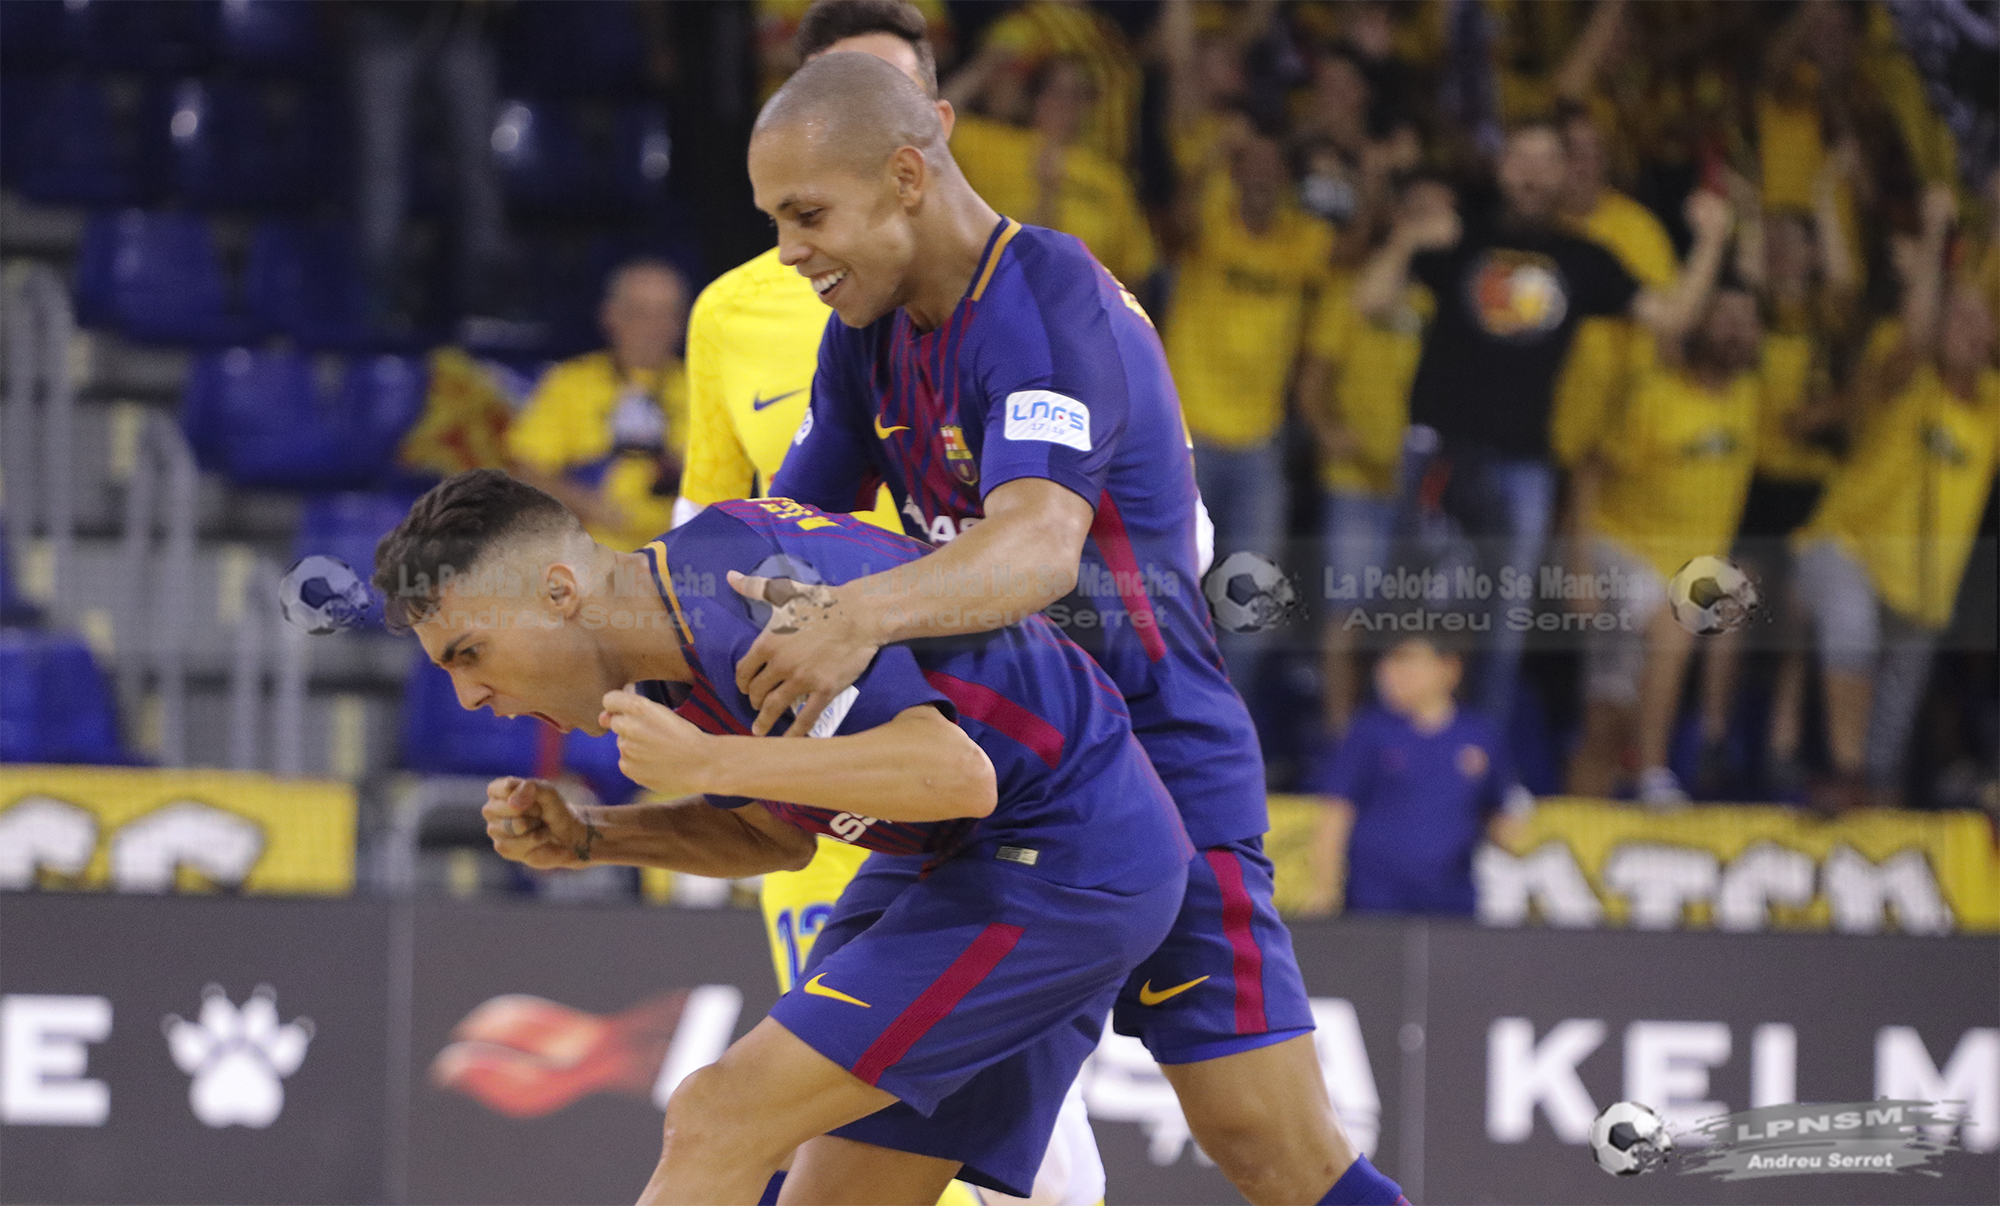 Fotogalería: FC Barcelona 6-3 Palma Futsal, en imágenes